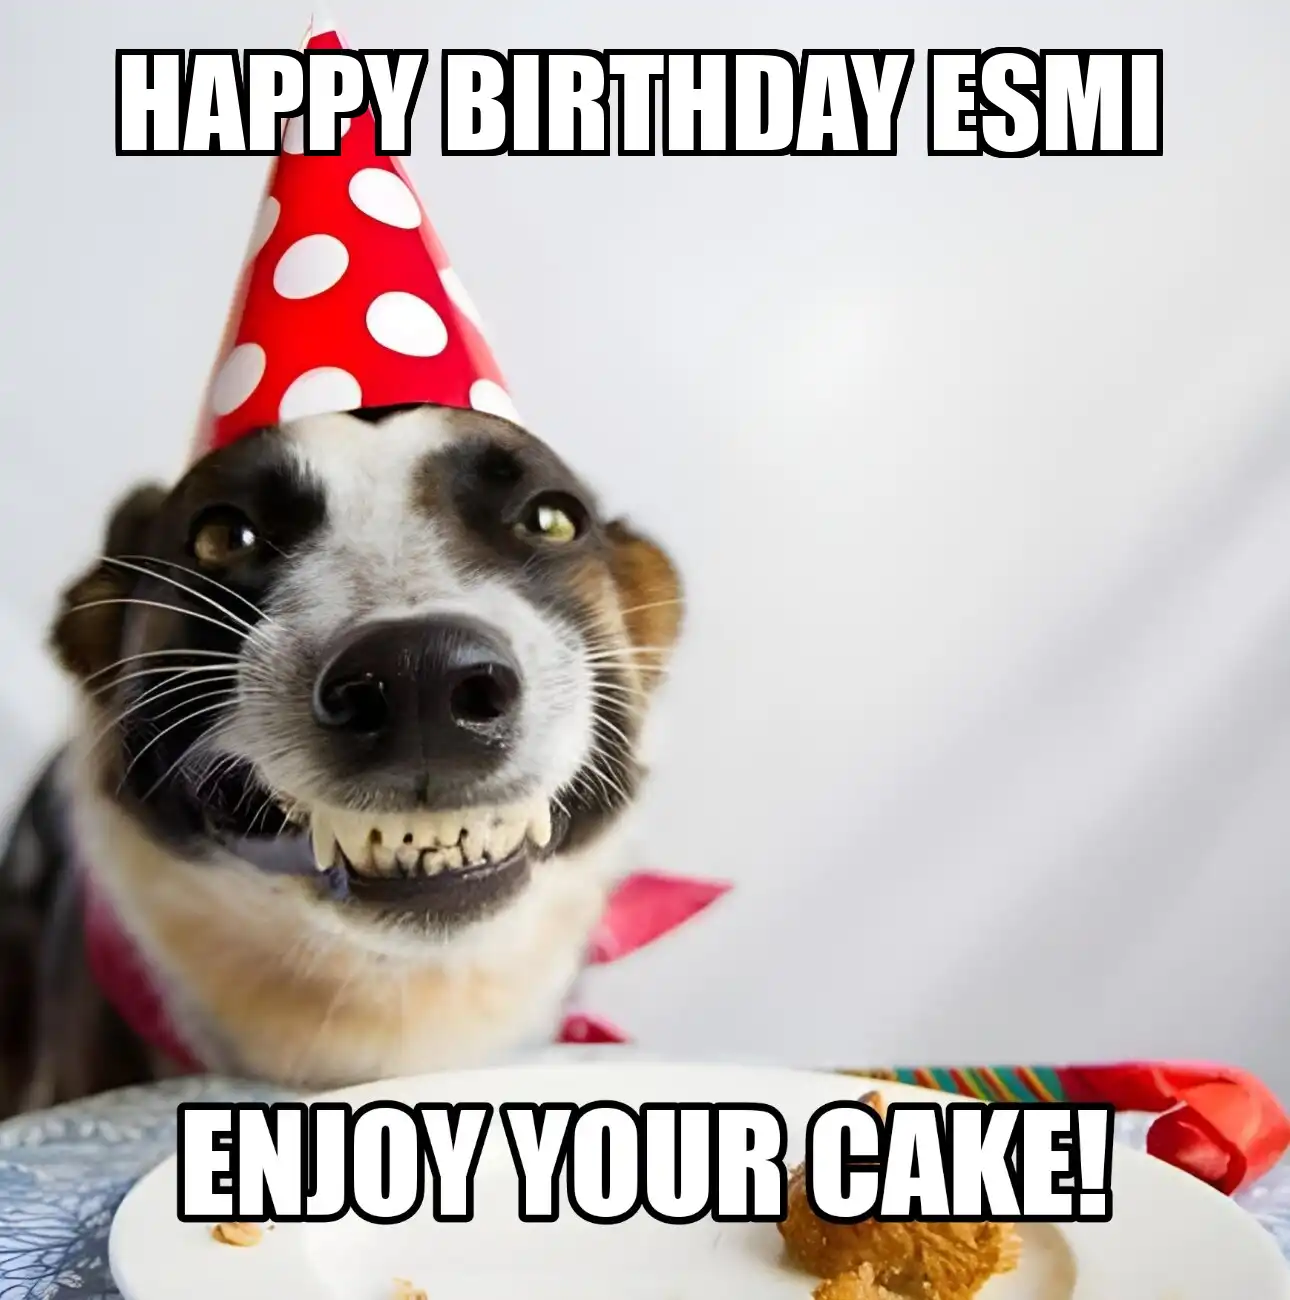 Happy Birthday Esmi Enjoy Your Cake Dog Meme